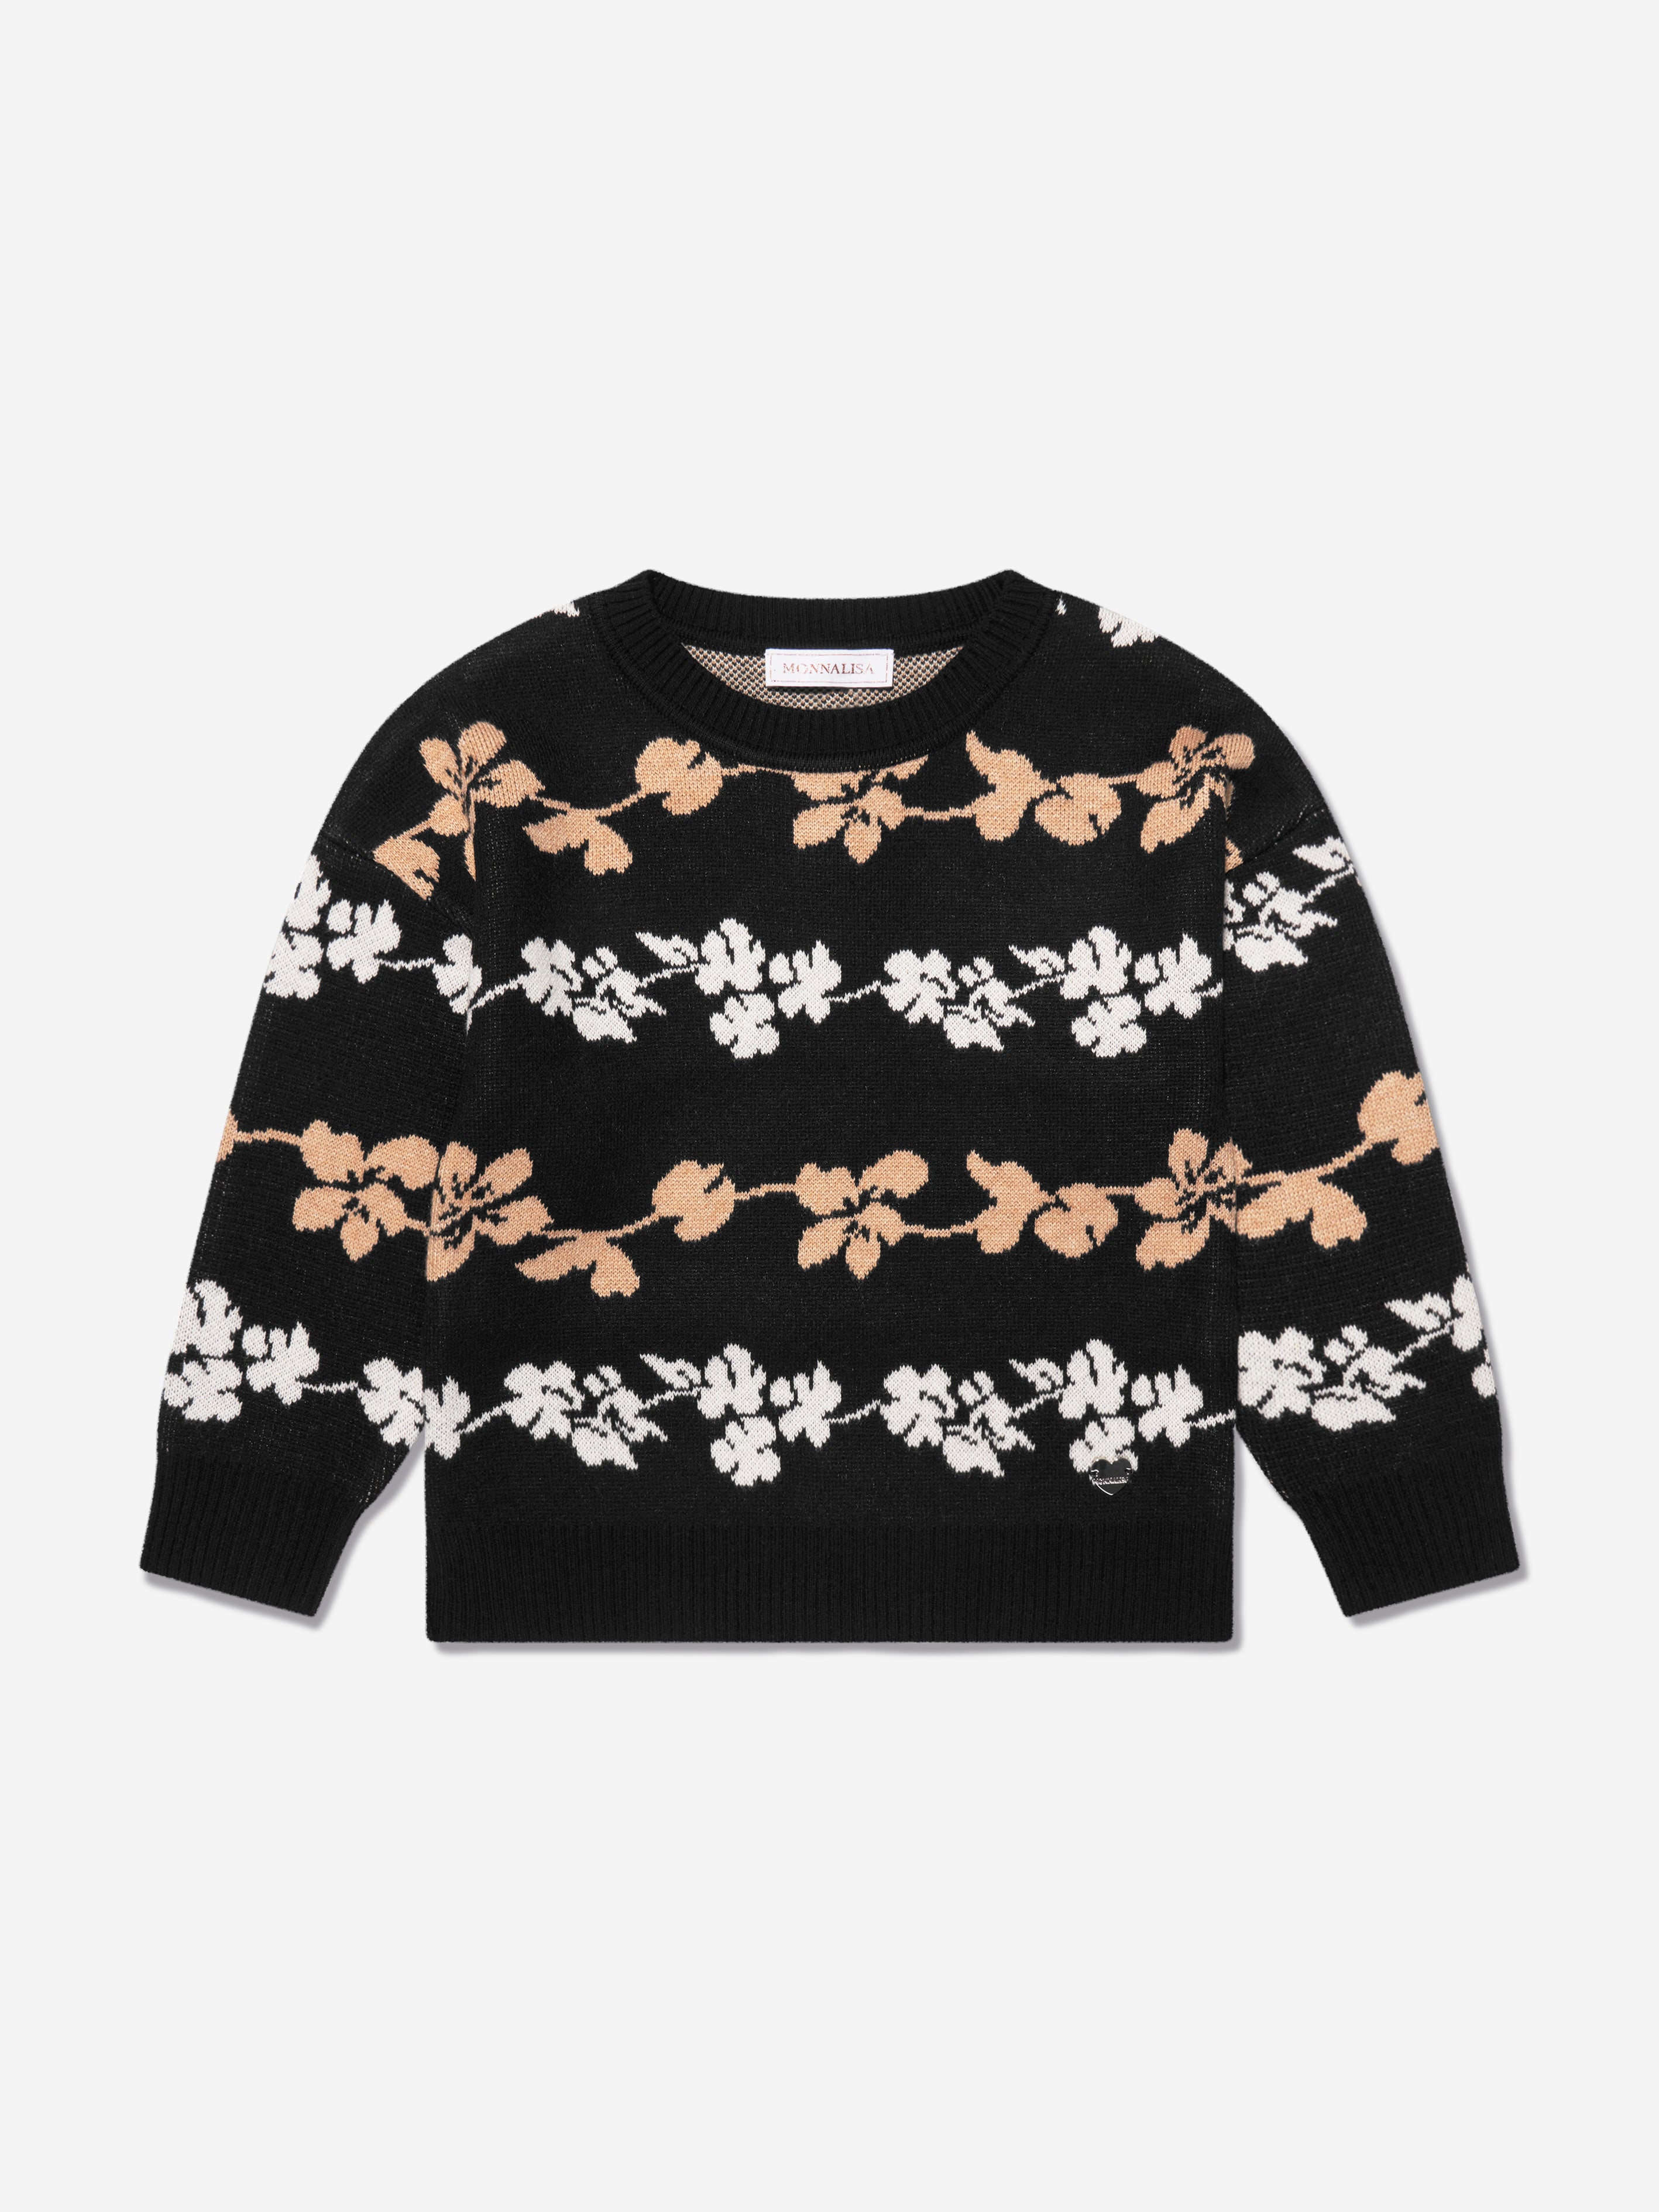 Black Floral Jacquard Knit Sweater, black/white